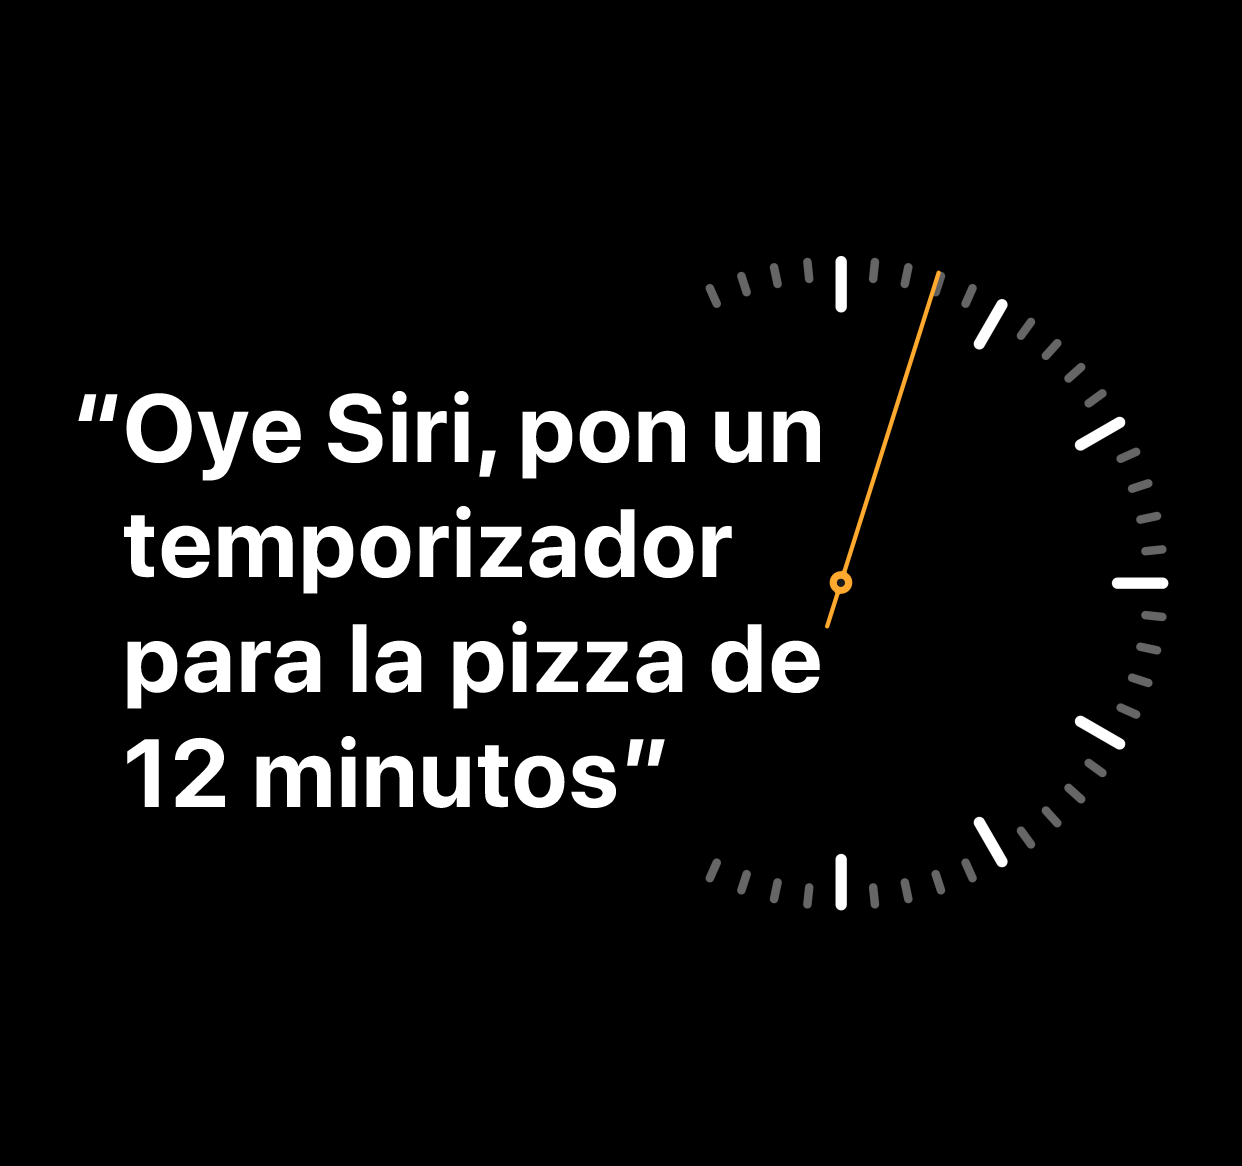 Ilustración de la frase “Oye Siri, activa un temporizador de 12 minutos para la pizza”.